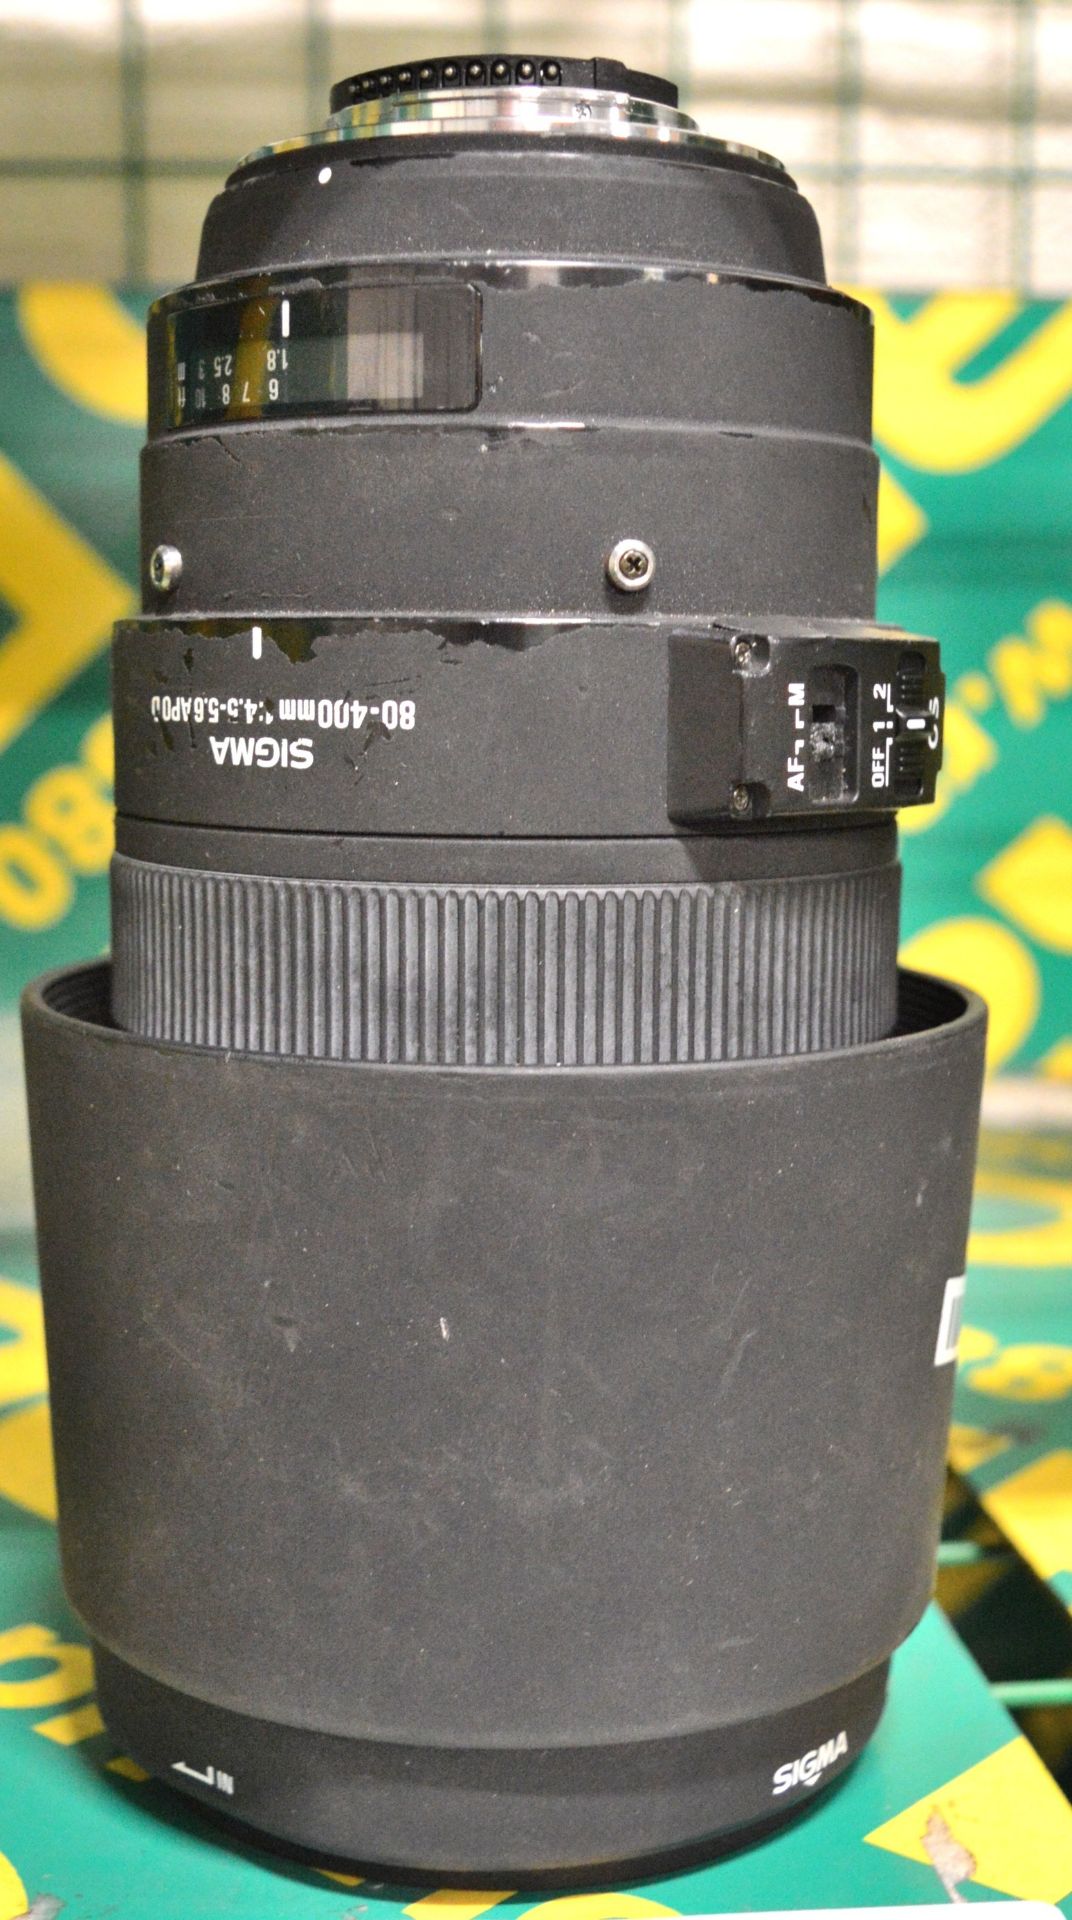 SigmaLens80-400mm 1:4.5-5.6APOD OpticalStab S/N1002426